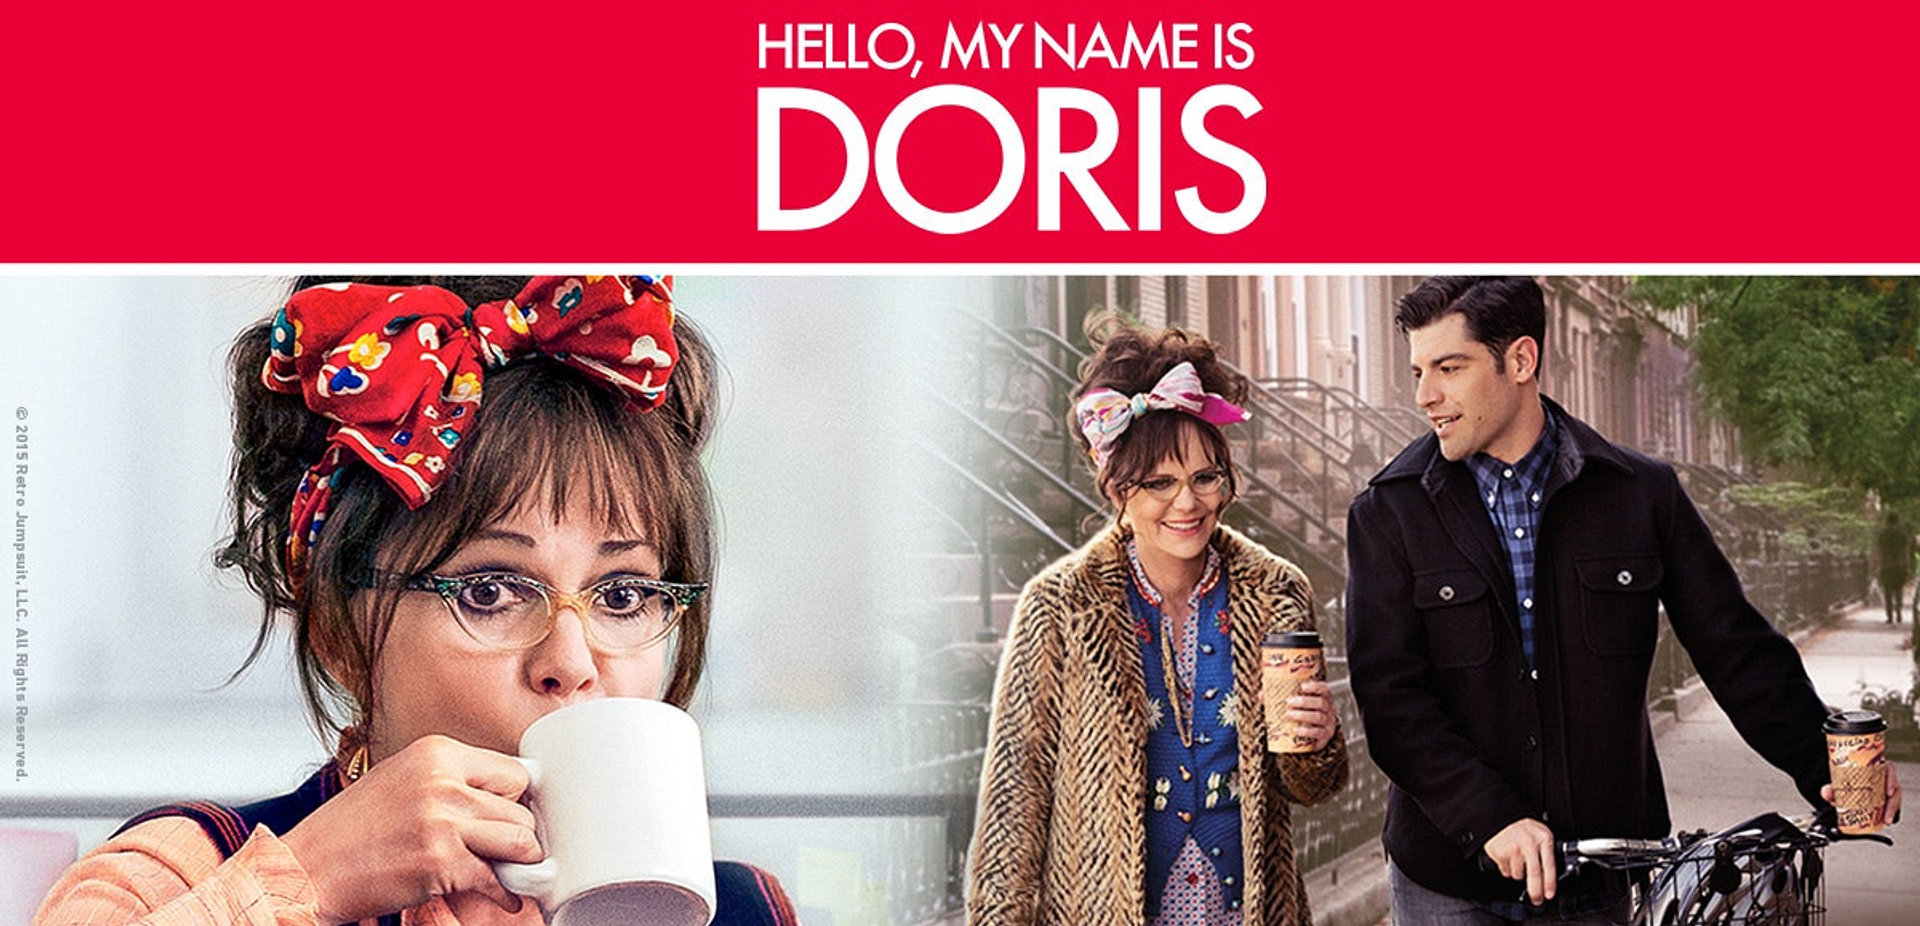 Hello, My name is Doris